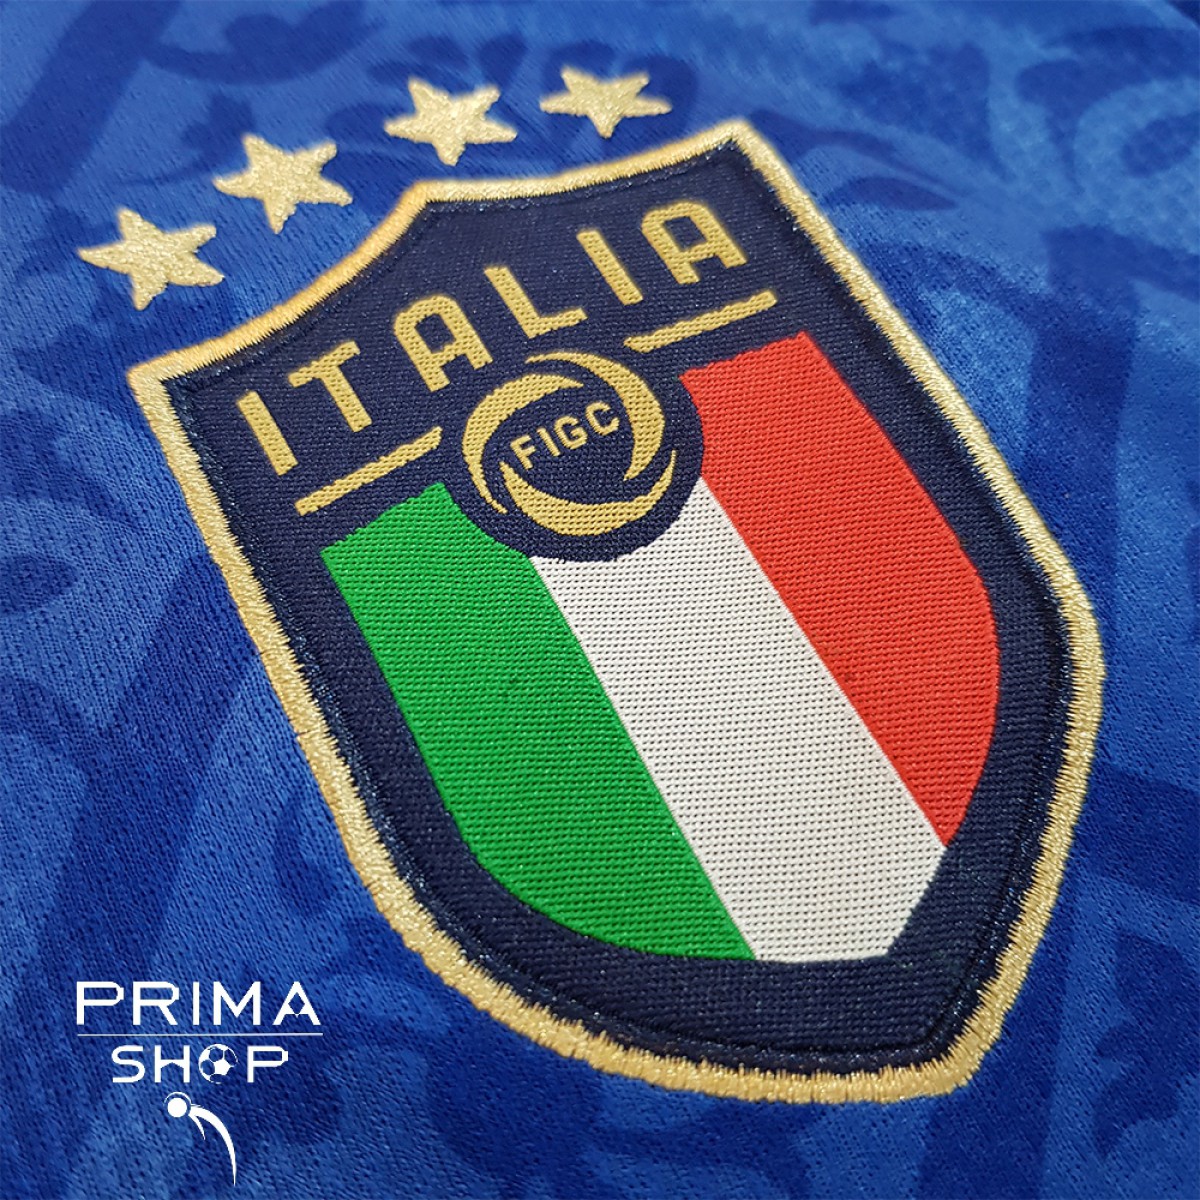 پیراهن تیم ملی ایتالیا 2020